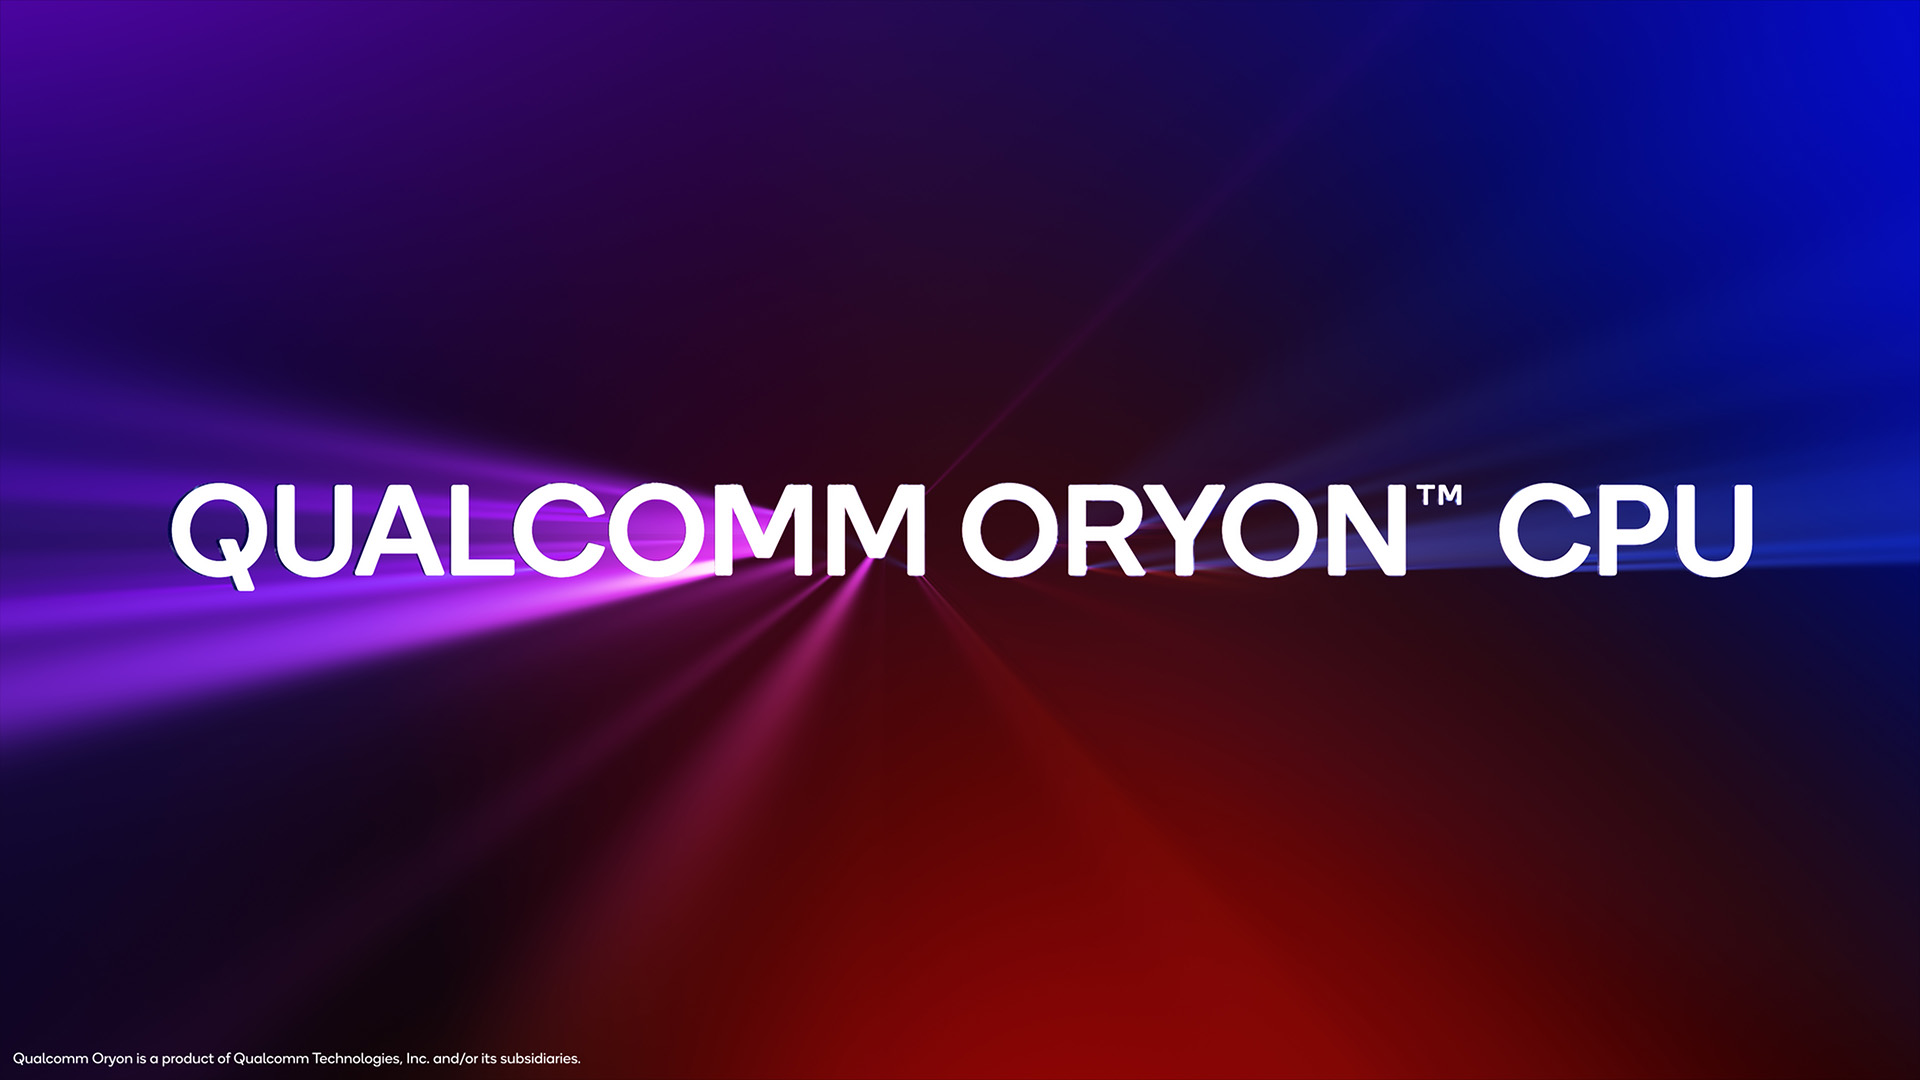 CPU Qualcomm Orion